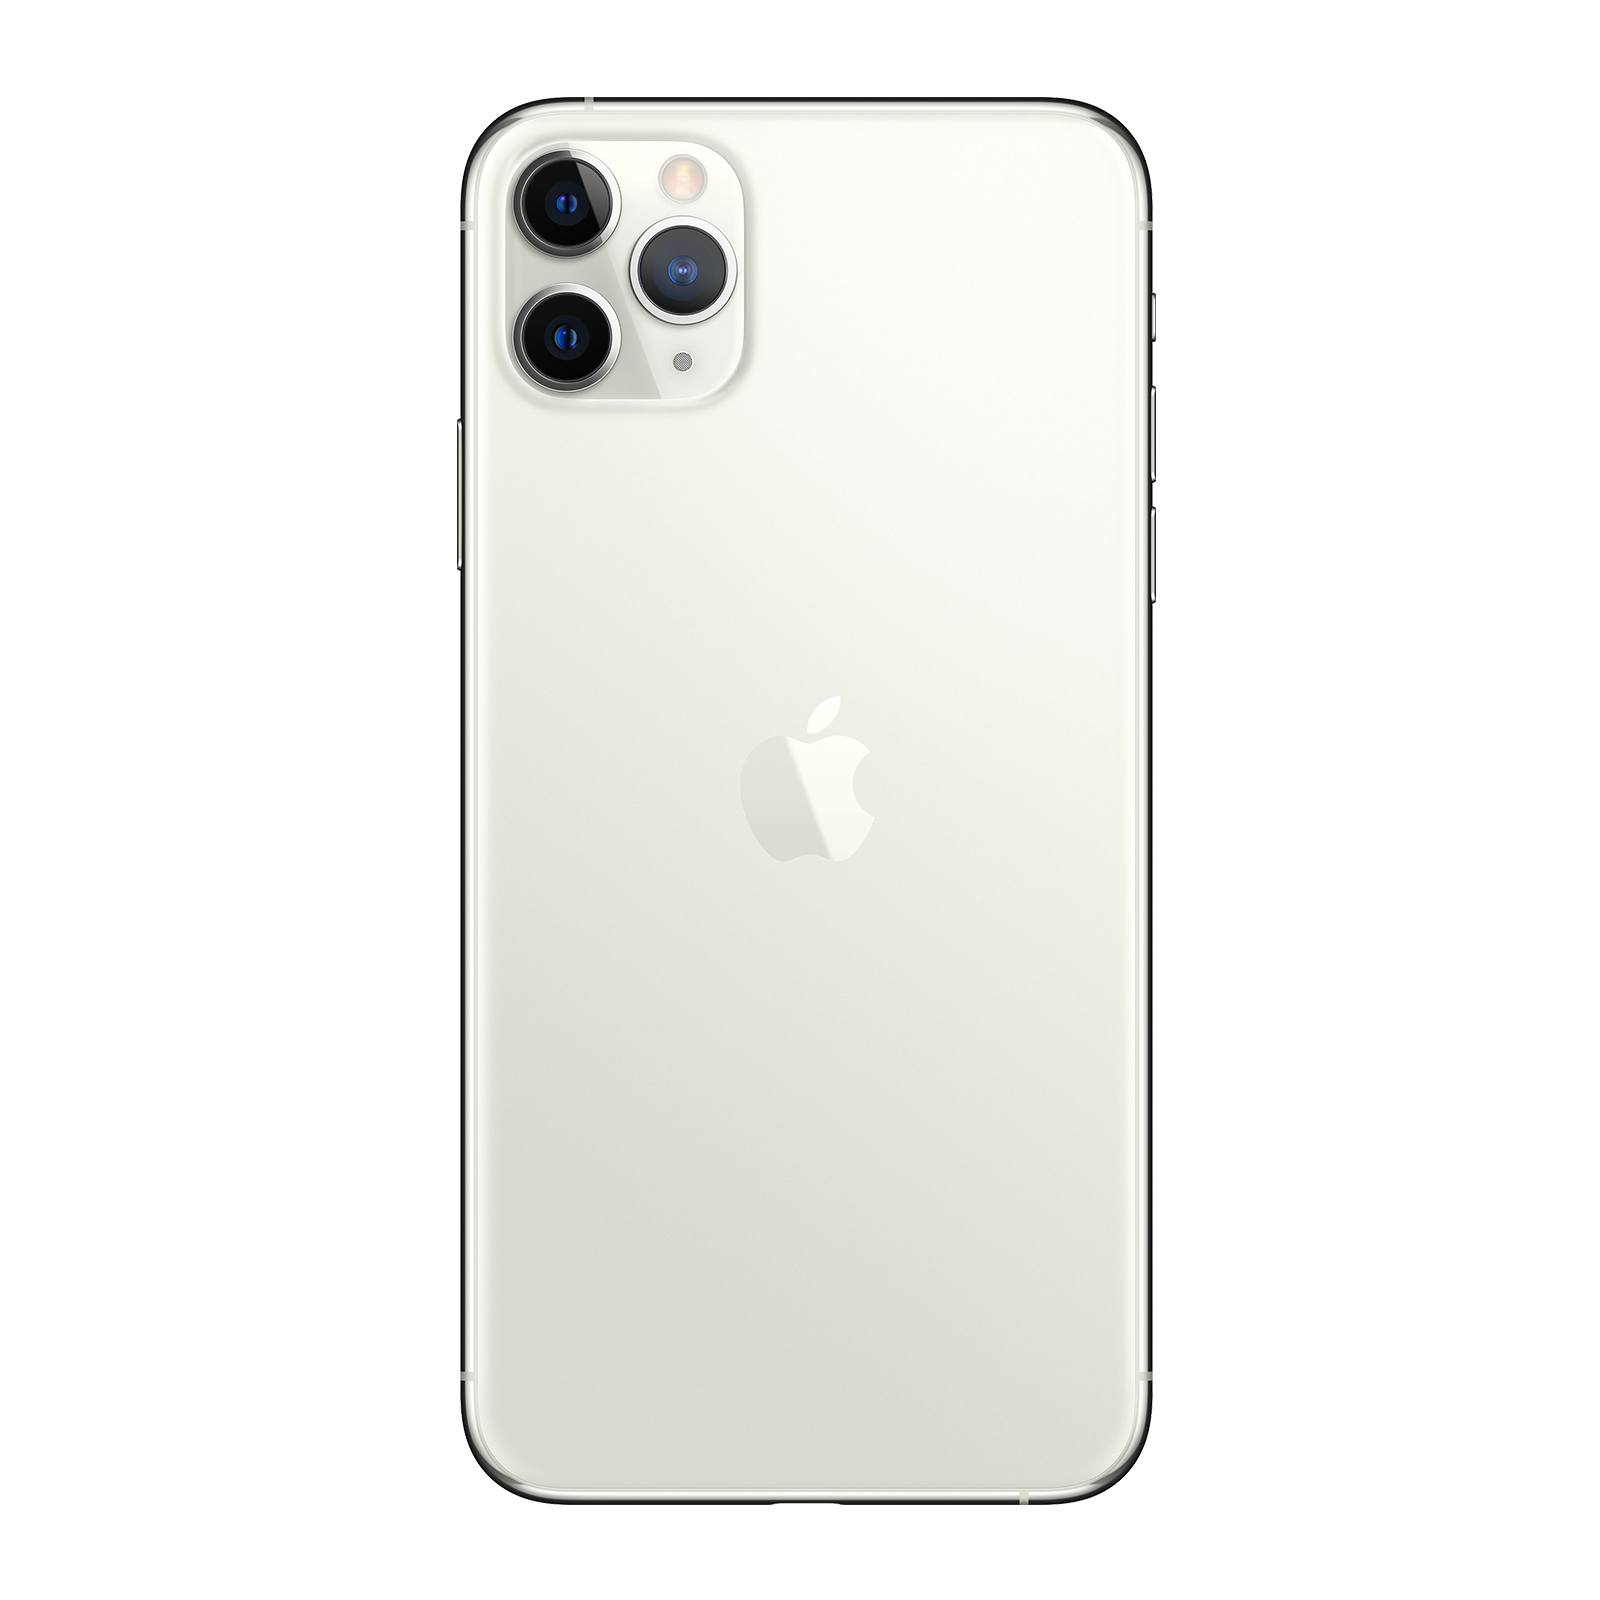 Apple iPhone 11 Pro 256GB Silver Pristine - T-Mobile